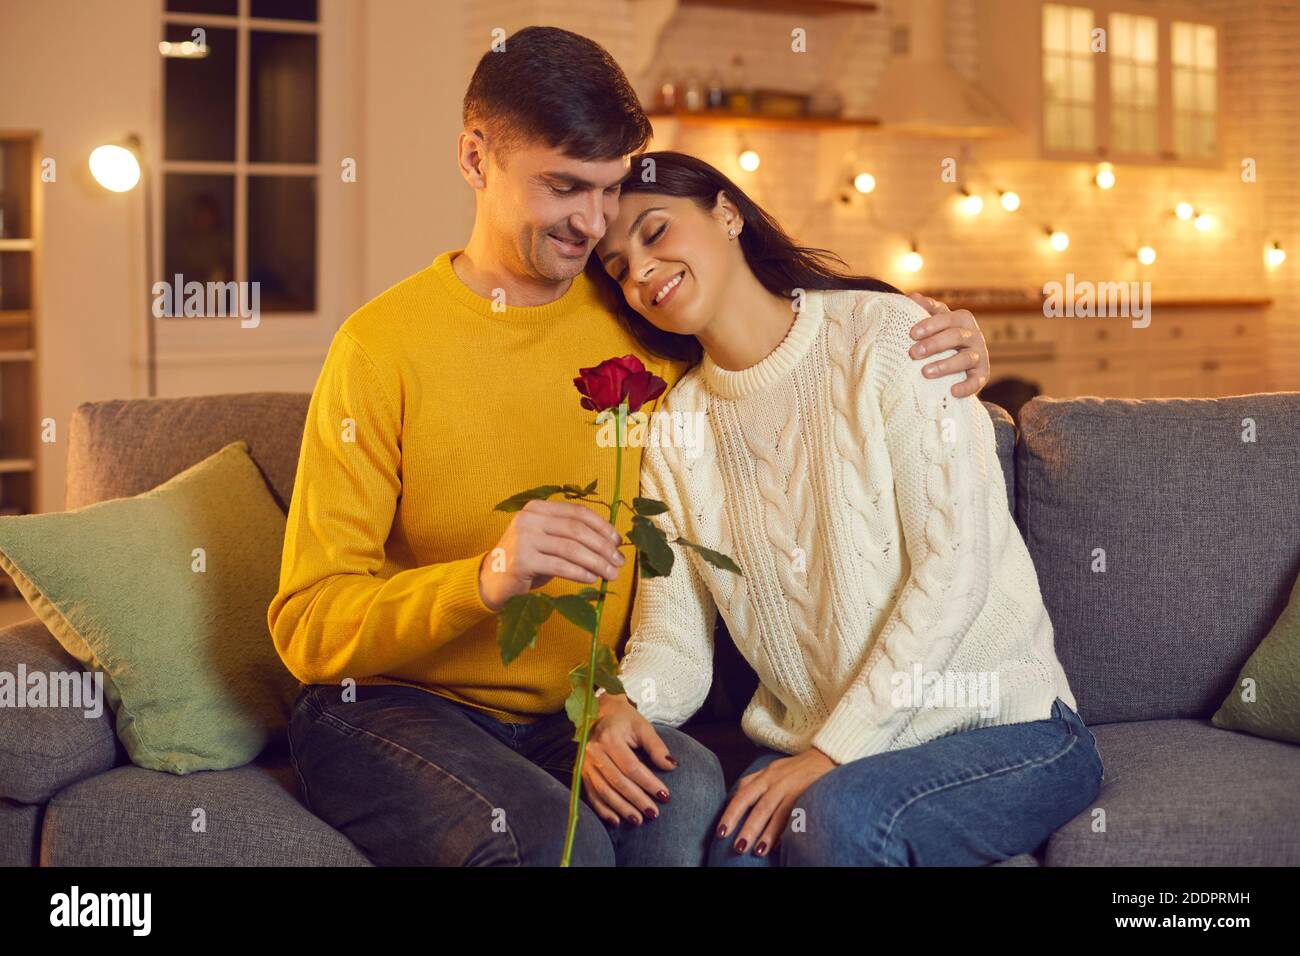 Junge lächelnde Mann Freund geben rote Rose als Symbol für Liebe zu seiner hübschen Freundin auf dem Sofa zu Hause Stockfoto